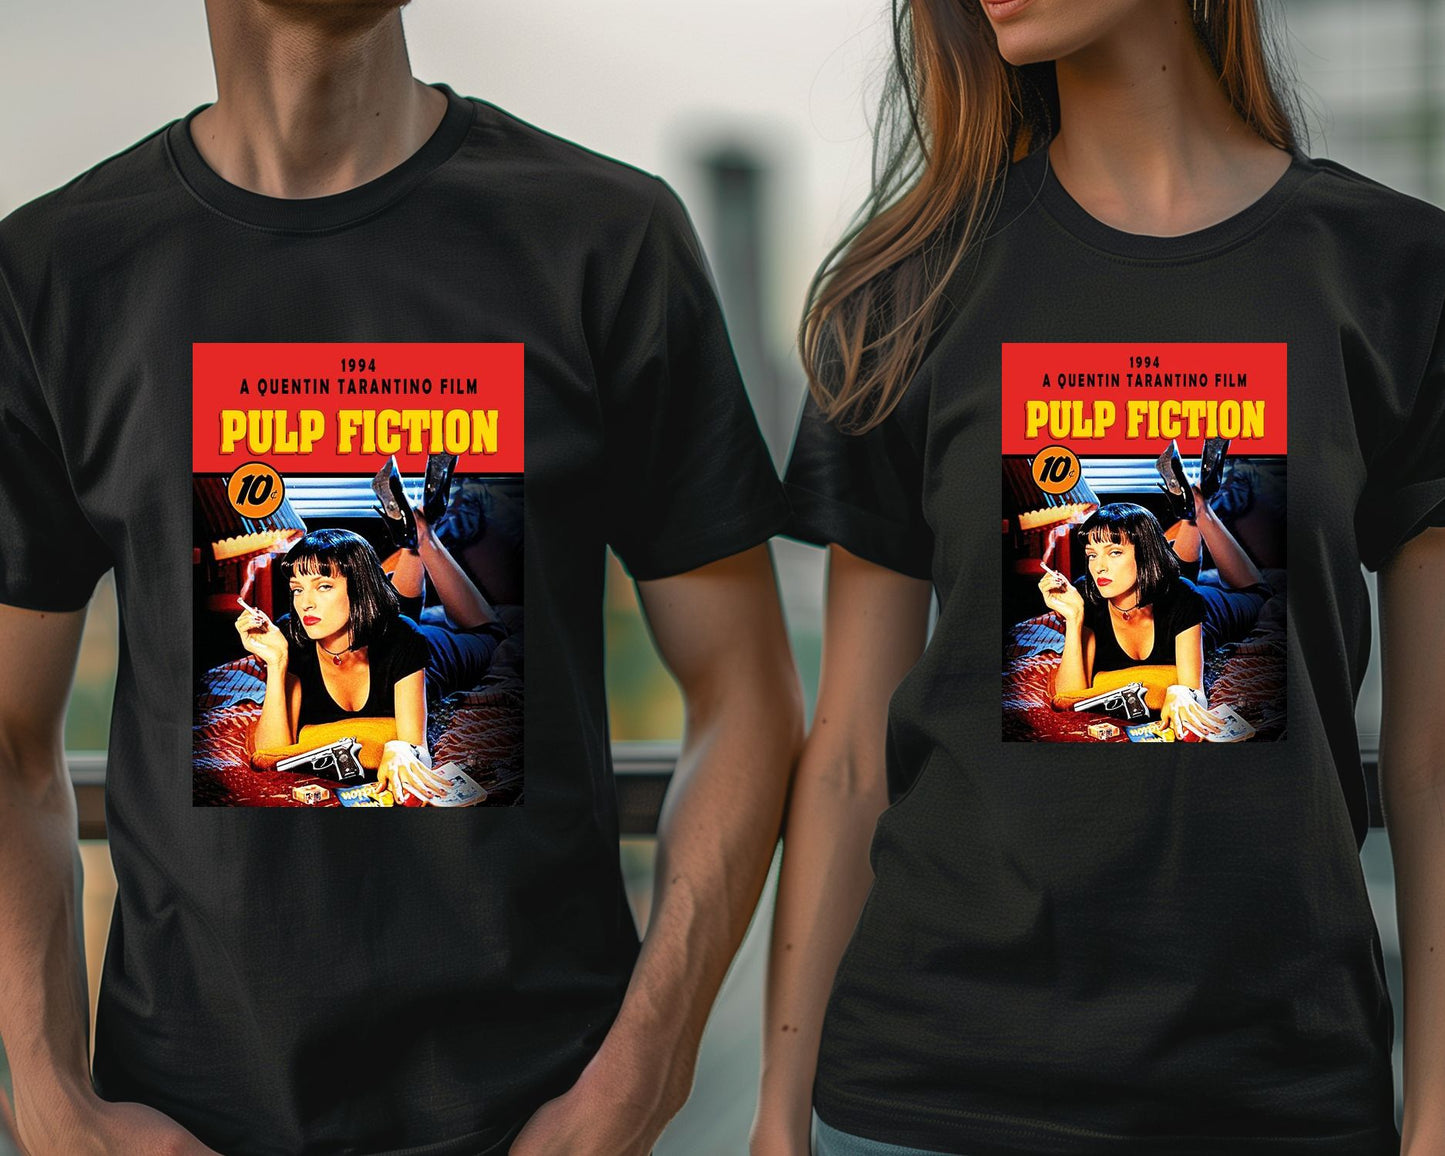 Pulp fiction 6 - @insaneclown